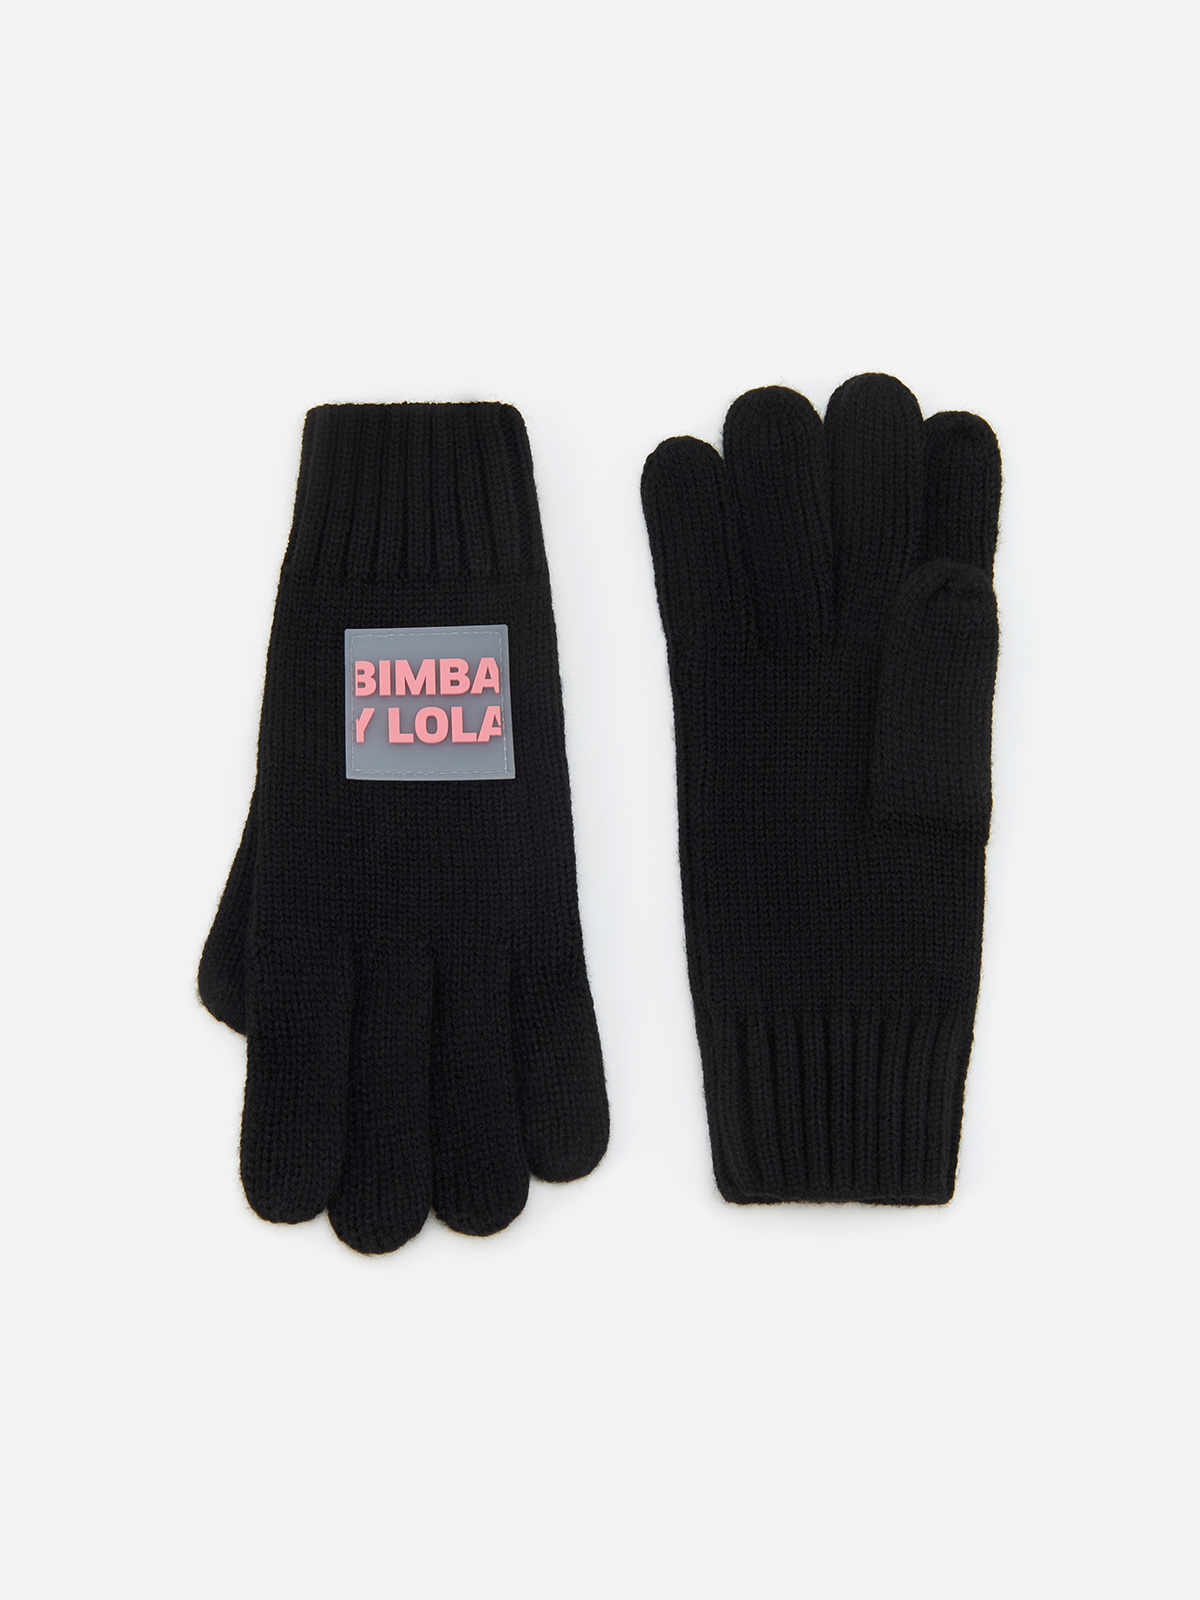 Перчатки Bimba Y Lola для женщин, трикотажные, размер M, 232BAGU04 10000, чёрные